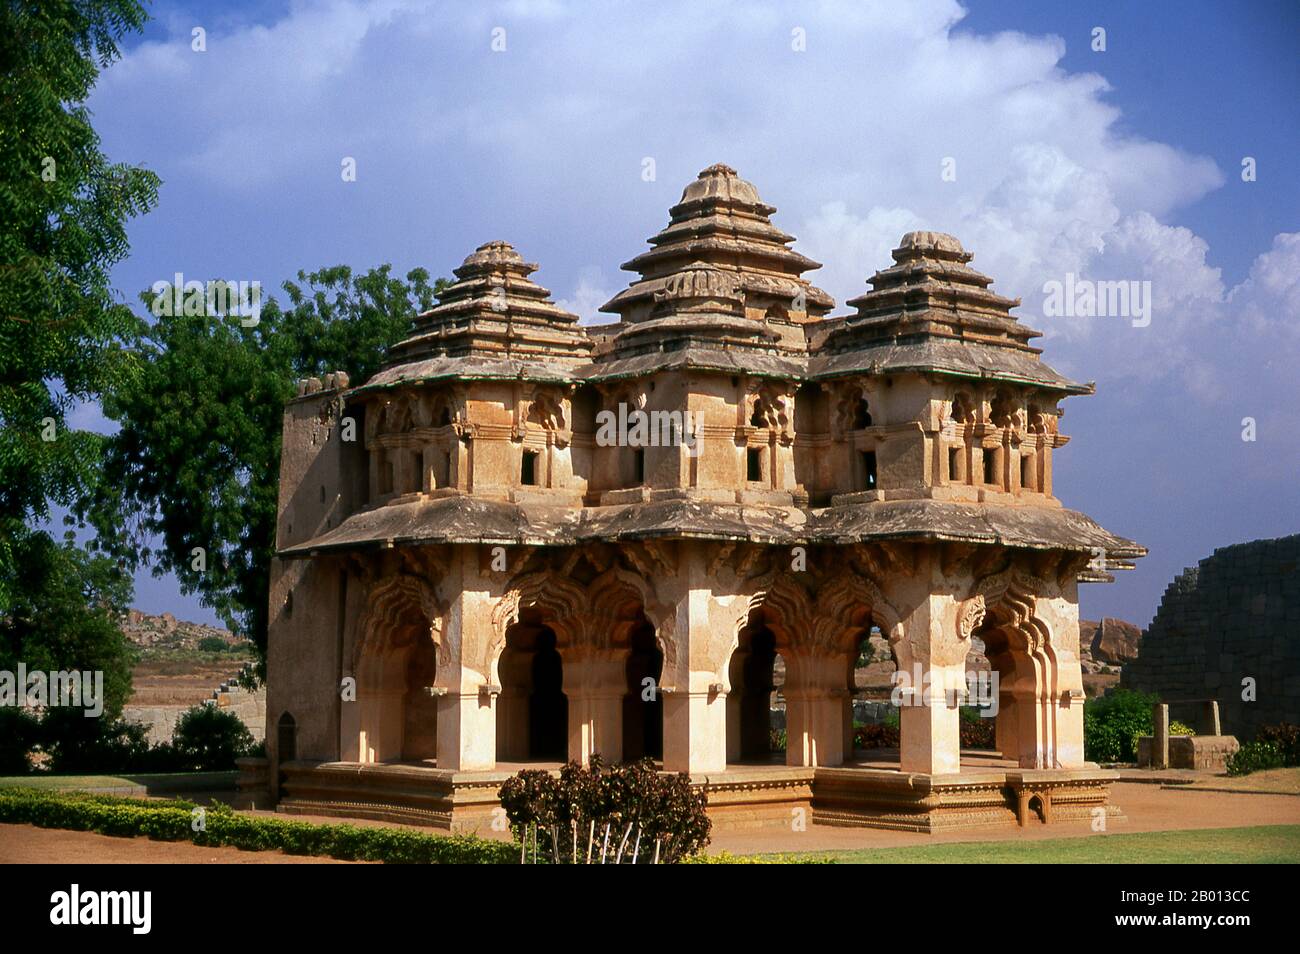 Indien: Lotus Mahal, Zenana Enclosure, Hampi, Bundesstaat Karnataka. Der Lotus Mahal ist eine Konstruktion aus der späteren Vijayanagara-Zeit und zeigt islamischen Einfluss in seinen gewölbten Toren und gewölbten Decken. Das Zenana-Gehäuse ist ein ummauertes Gelände, in dem ursprünglich die Frauen des königlichen Haushalts untergebracht waren. Hampi ist ein Dorf im nördlichen Bundesstaat Karnataka. Es befindet sich in den Ruinen von Vijayanagara, der ehemaligen Hauptstadt des Vijayanagara-Reiches. Vor der Stadt Vijayanagara ist es weiterhin ein wichtiges religiöses Zentrum, in dem der Virupaksha-Tempel sowie mehrere andere Denkmäler untergebracht sind. Stockfoto